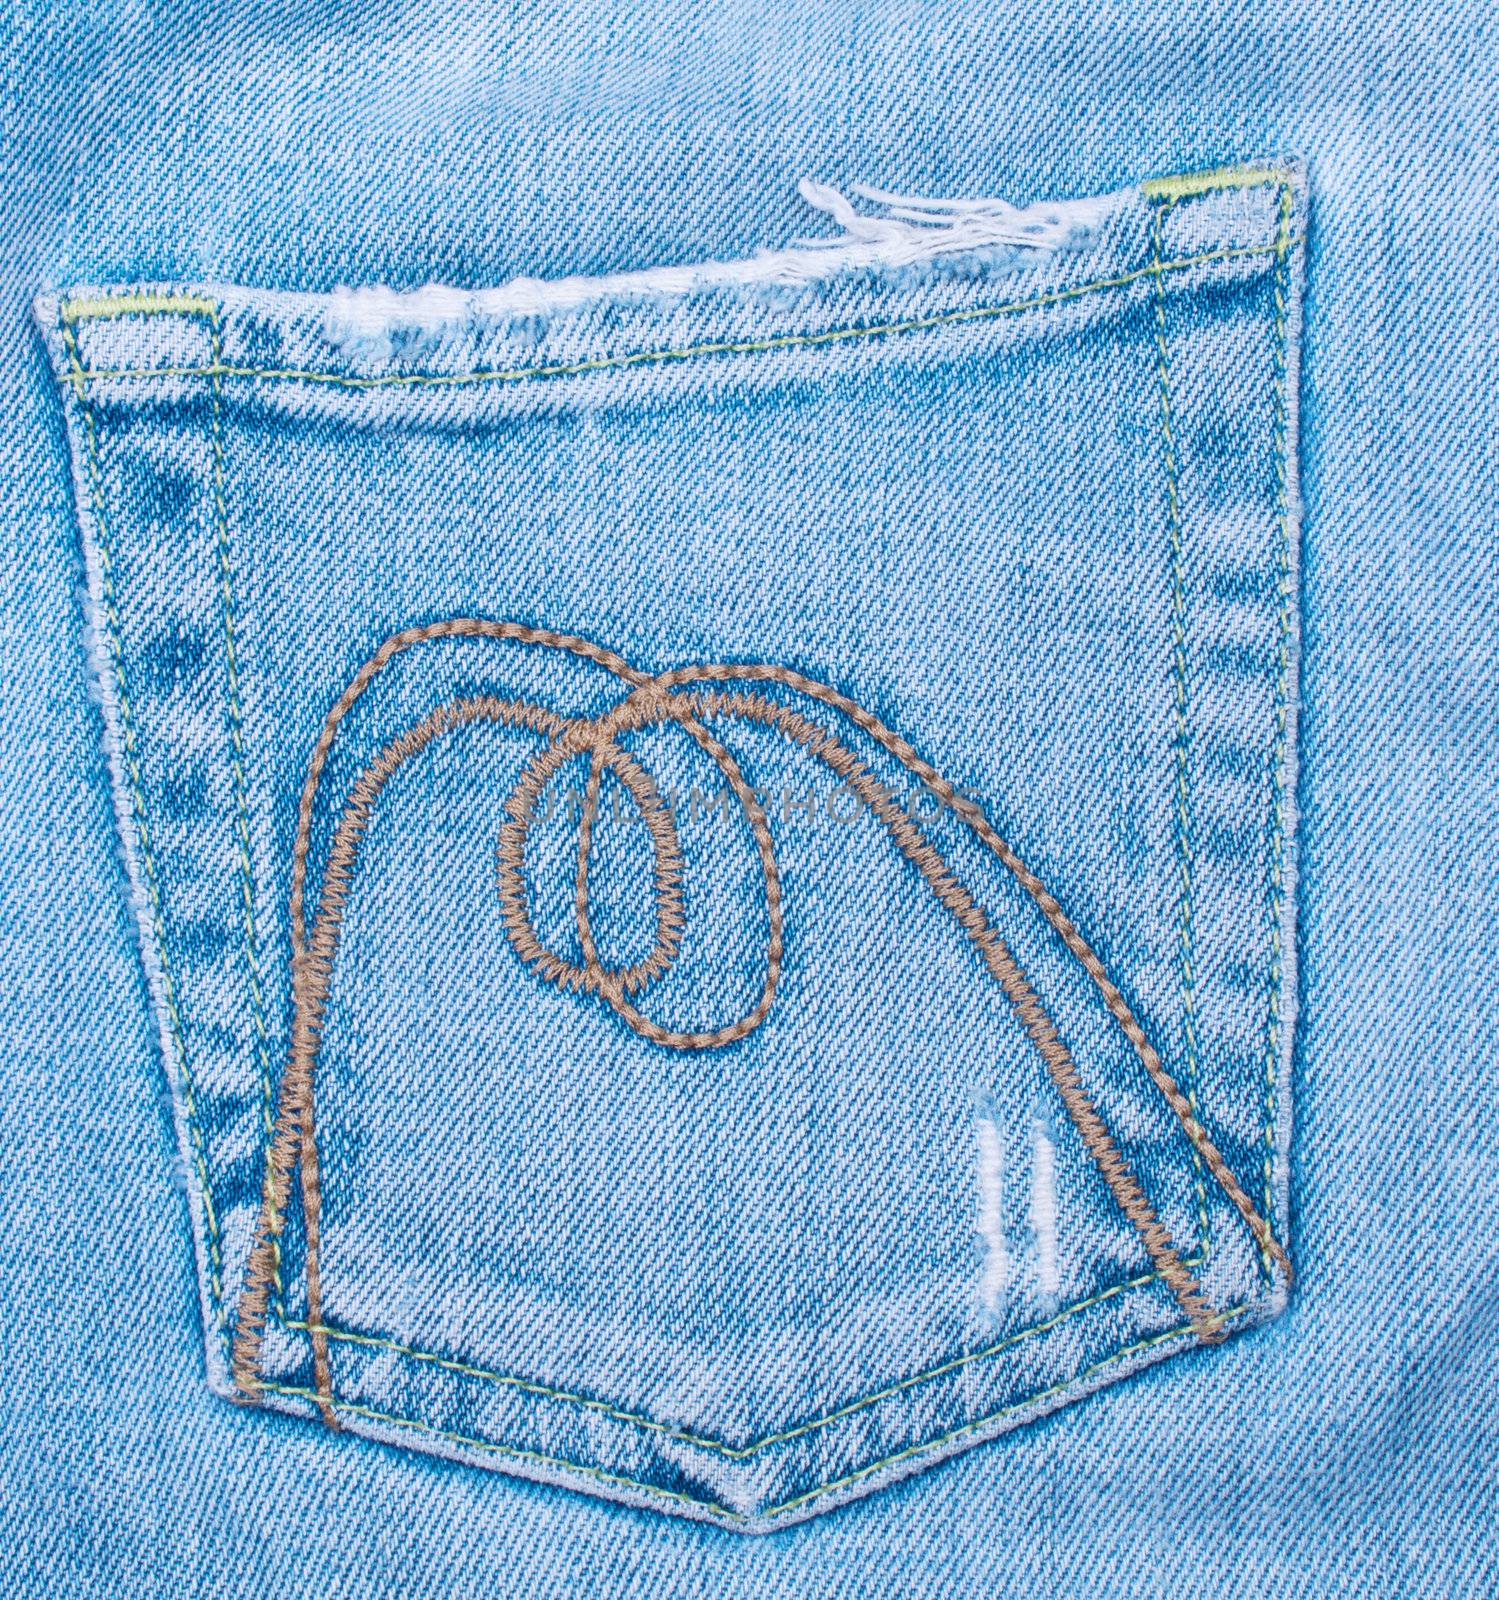 Old battered jeans pocket background close up